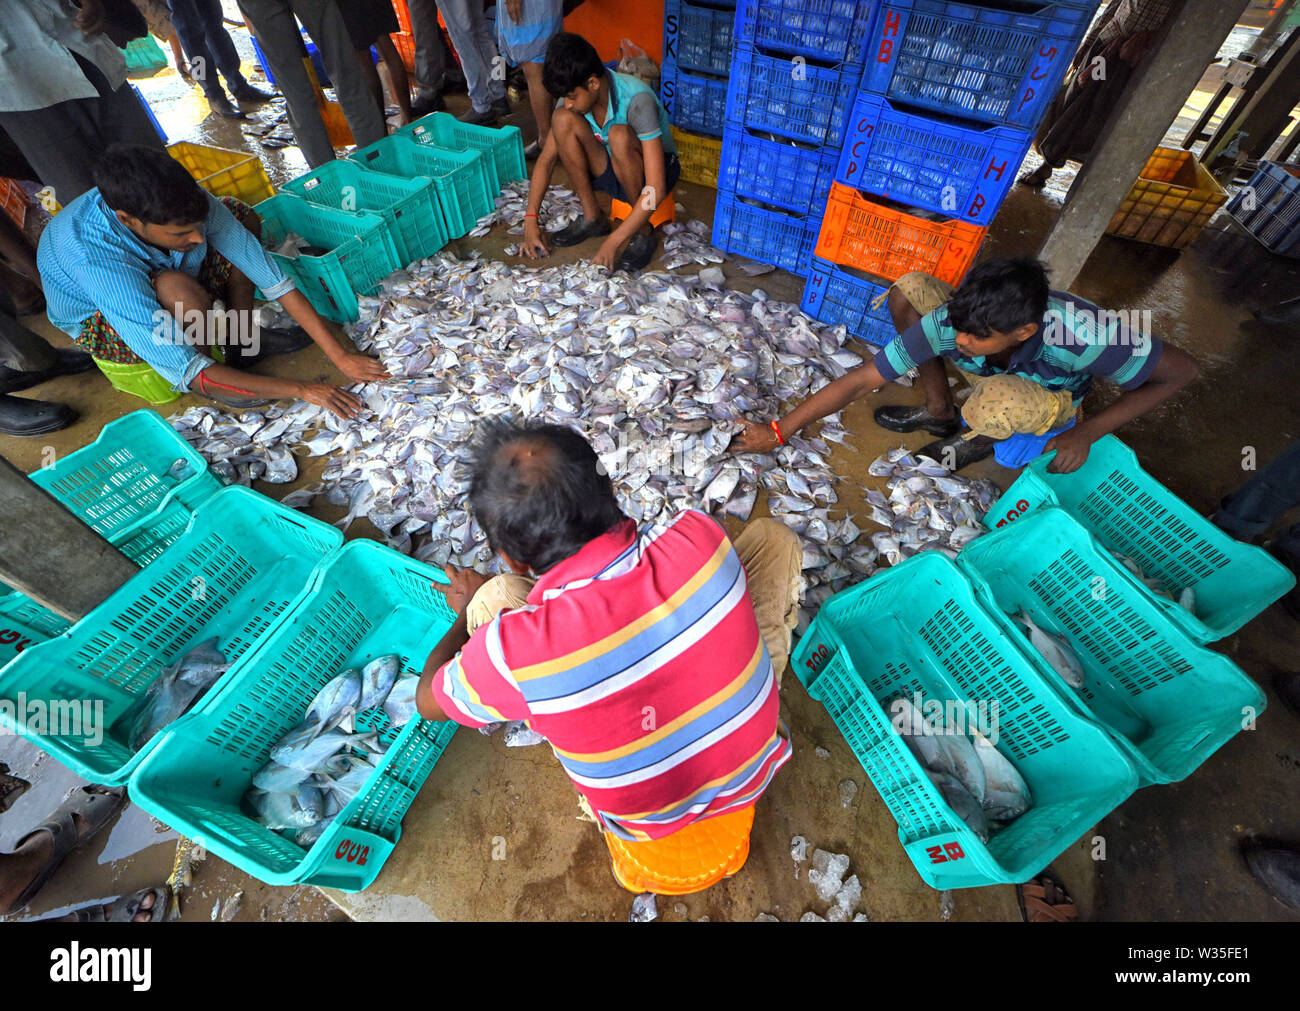 Juli 12, 2019 - Digha, West Bengal, Indien - Fischer besetzt Sortierung Angeln am Fisch Handelsplatz der Digha in der Nähe der Bucht von Bengalen. Wegen des Mangels an Regen, Versorgung mit Fisch ist sehr unregelmäßig und weniger Vergleichende als andere Jahre.. Lokale Regierung beschränkt die Fangtätigkeiten so vor kurzem Insgesamt 31 Fischer gegangen sind, fehlt in der Bucht von Bengalen wegen schlechten Wetters (Credit Bild: © Avishek Das/SOPA Bilder über ZUMA Draht) Stockfoto